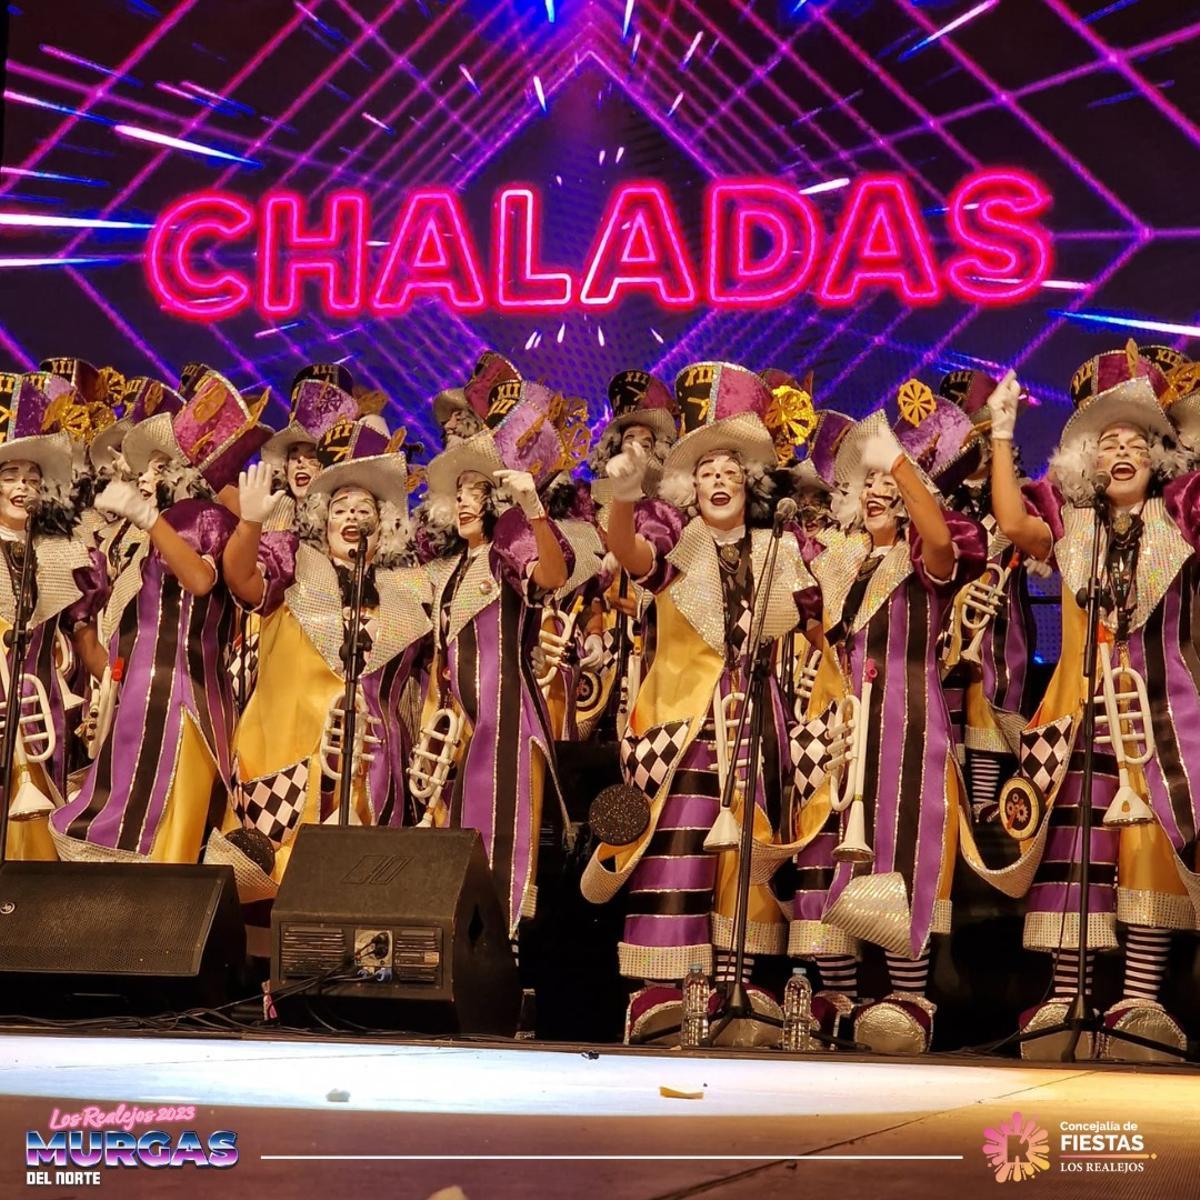 La murga Chaladas, dirigida por Marina Toledo y bajo la dirección musical de Judo Lorenzo.